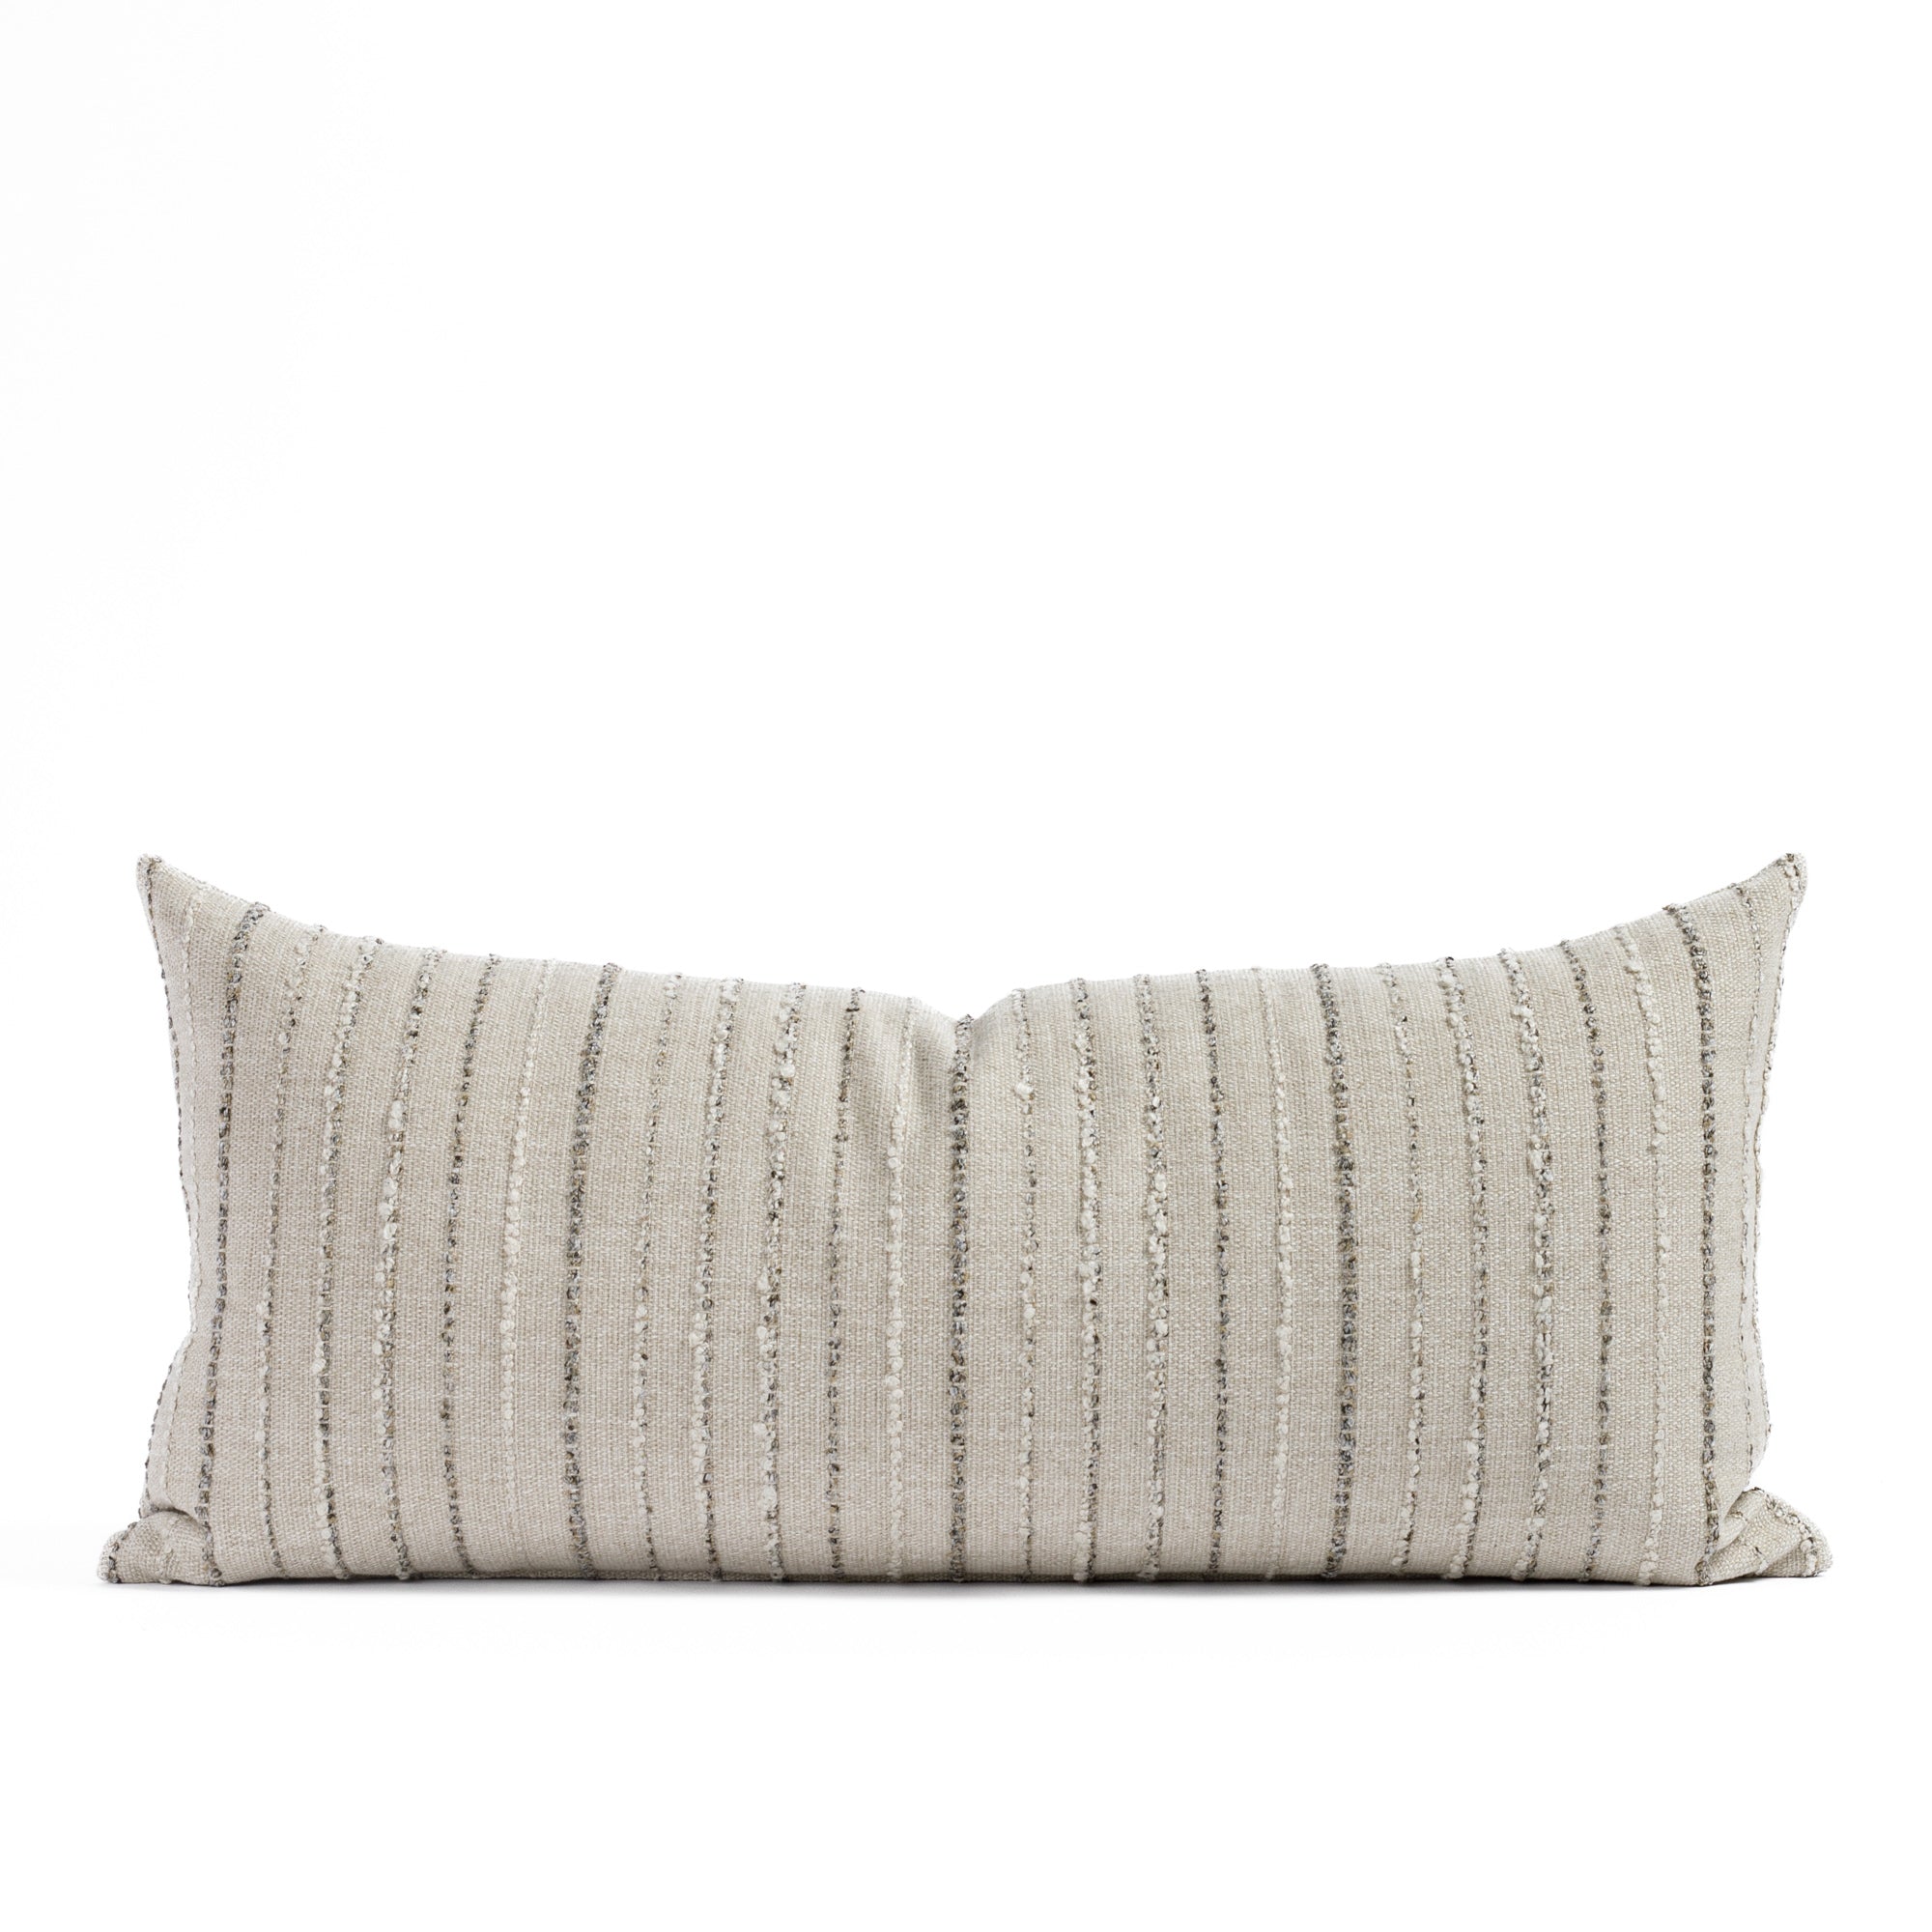 Wren Stripe 15x32 XL Lumbar Pillow Cobblestone, a neutral earth toned striped Tonic Living extra long lumbar pillow